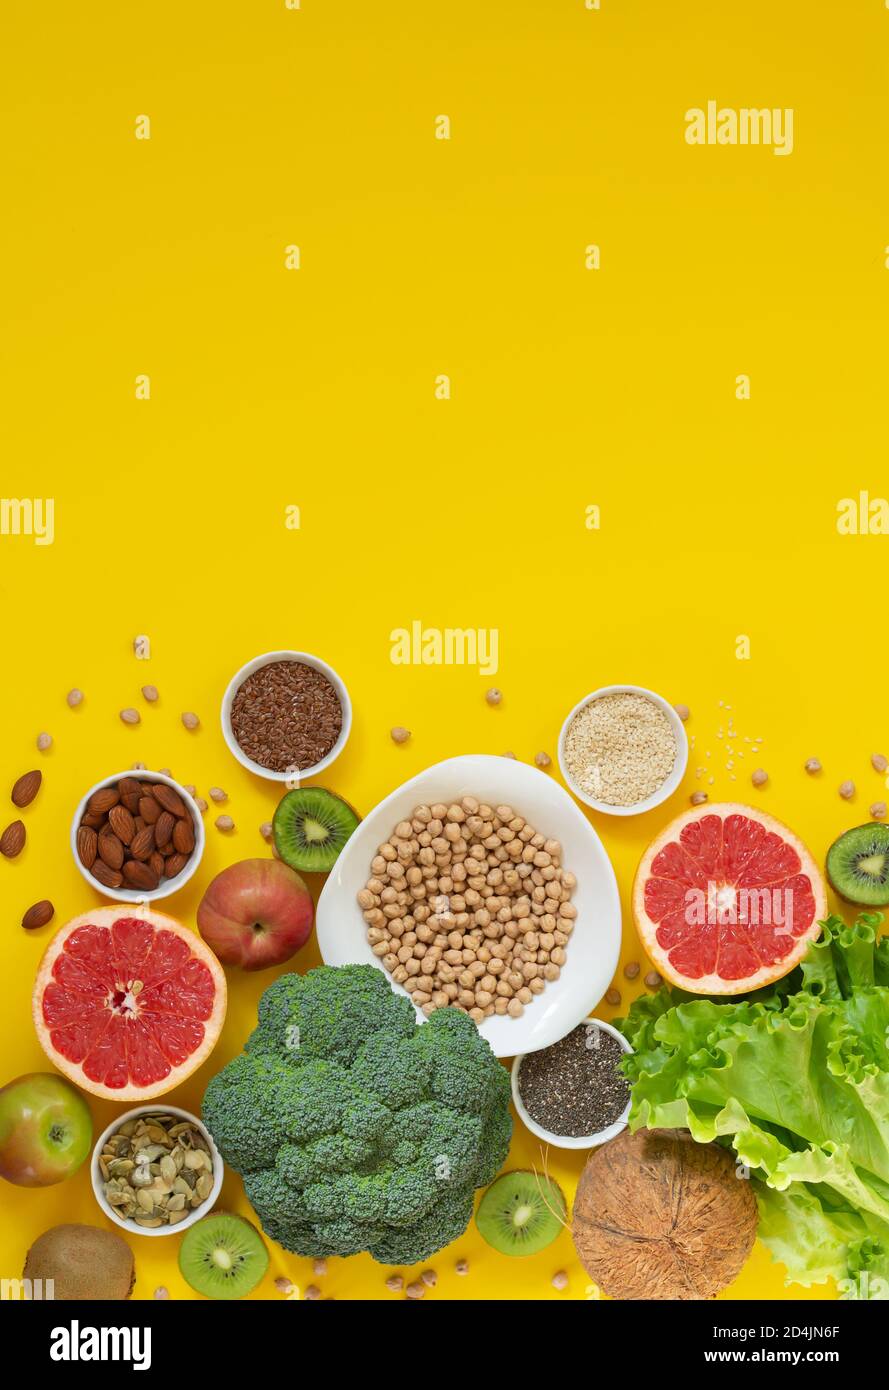 Sélection de nourriture saine et saine (légumes, fruits, graines, noix, herbes) sur fond jaune avec espace de copie Banque D'Images